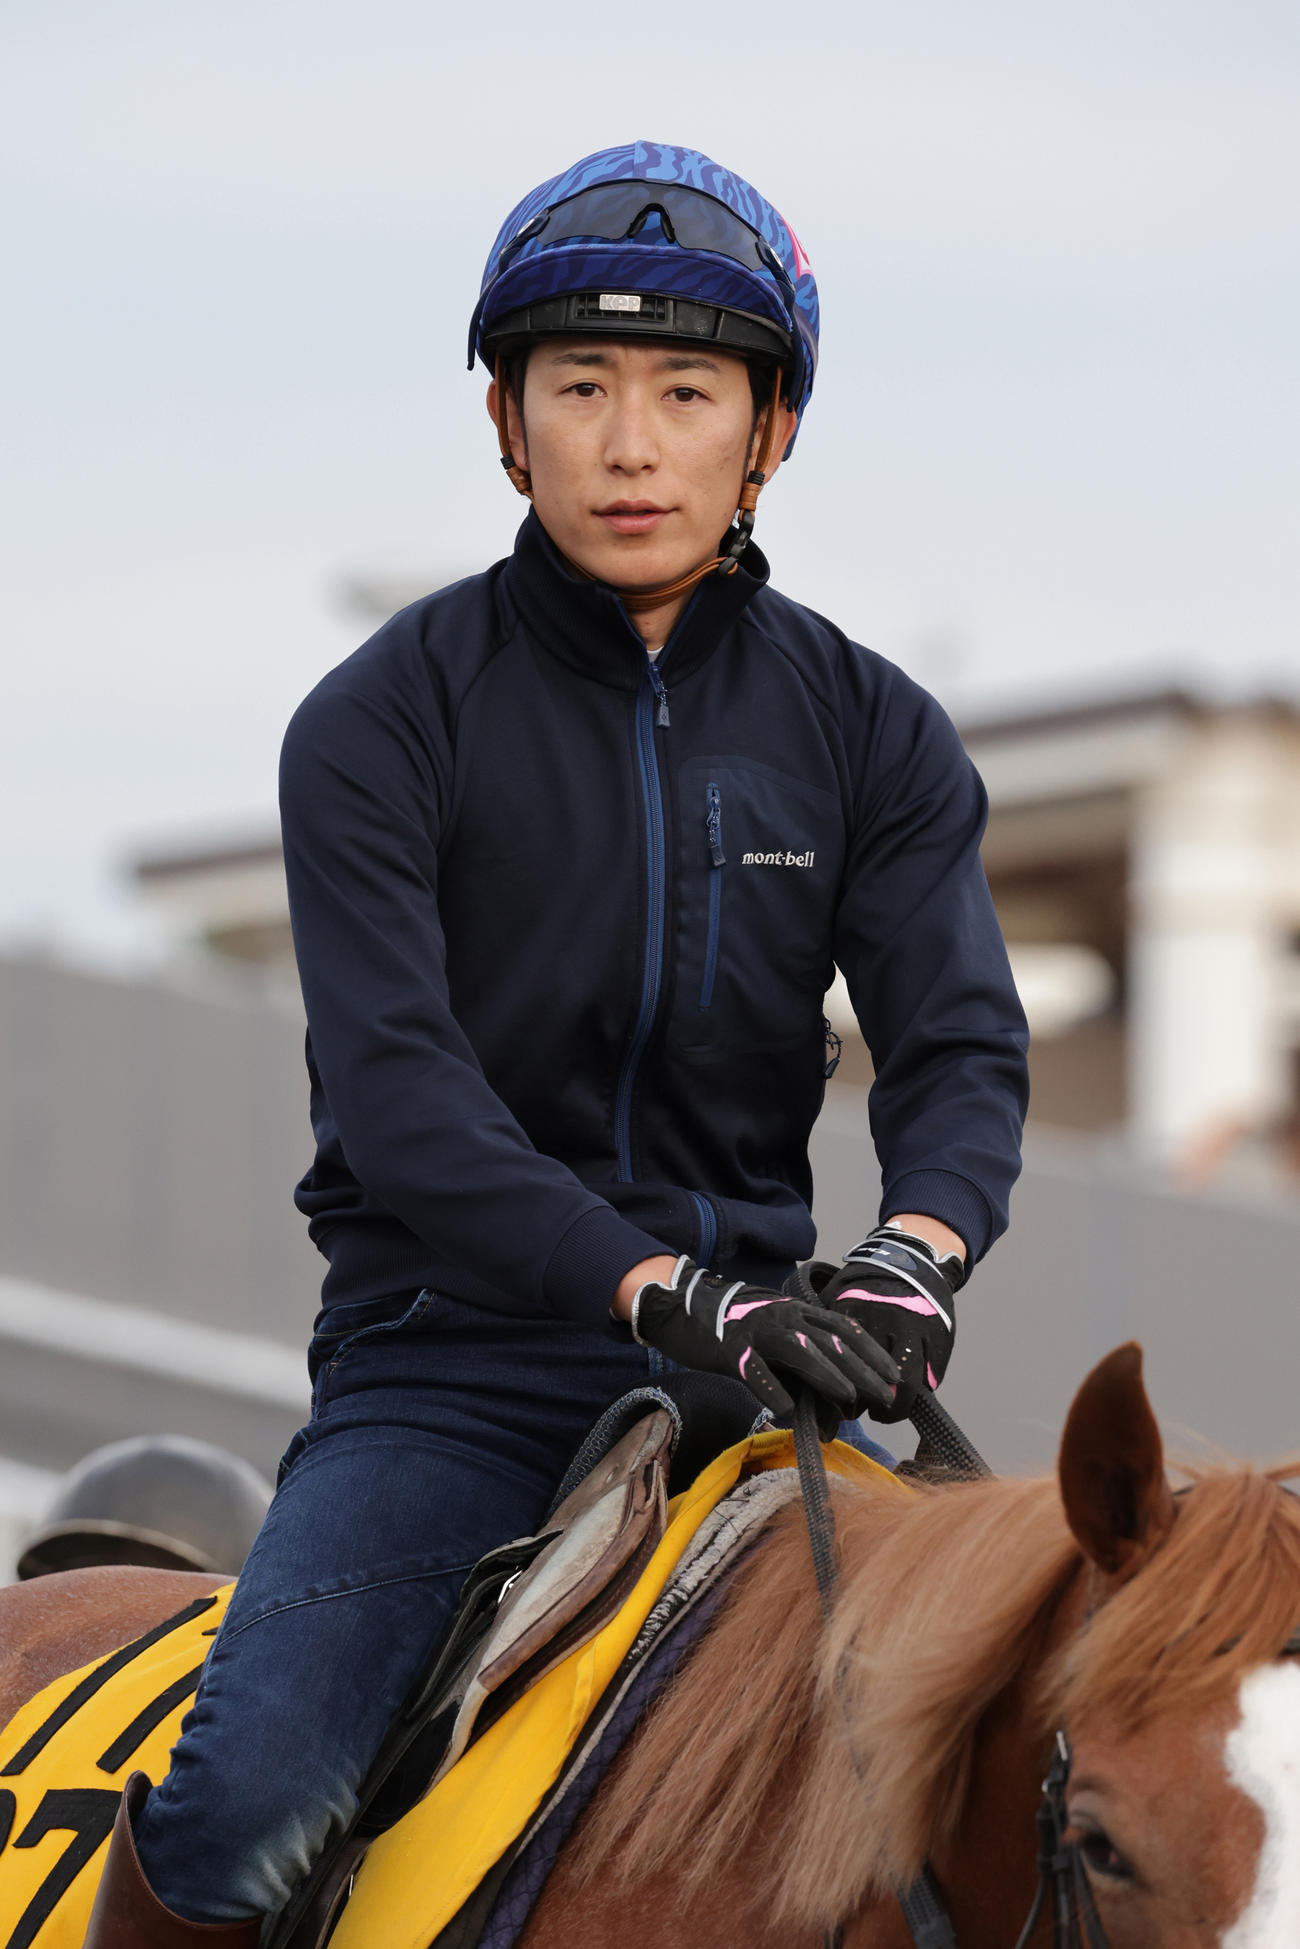 600勝まであと1勝の丸山元気騎手は、札幌競馬場で調教に励む